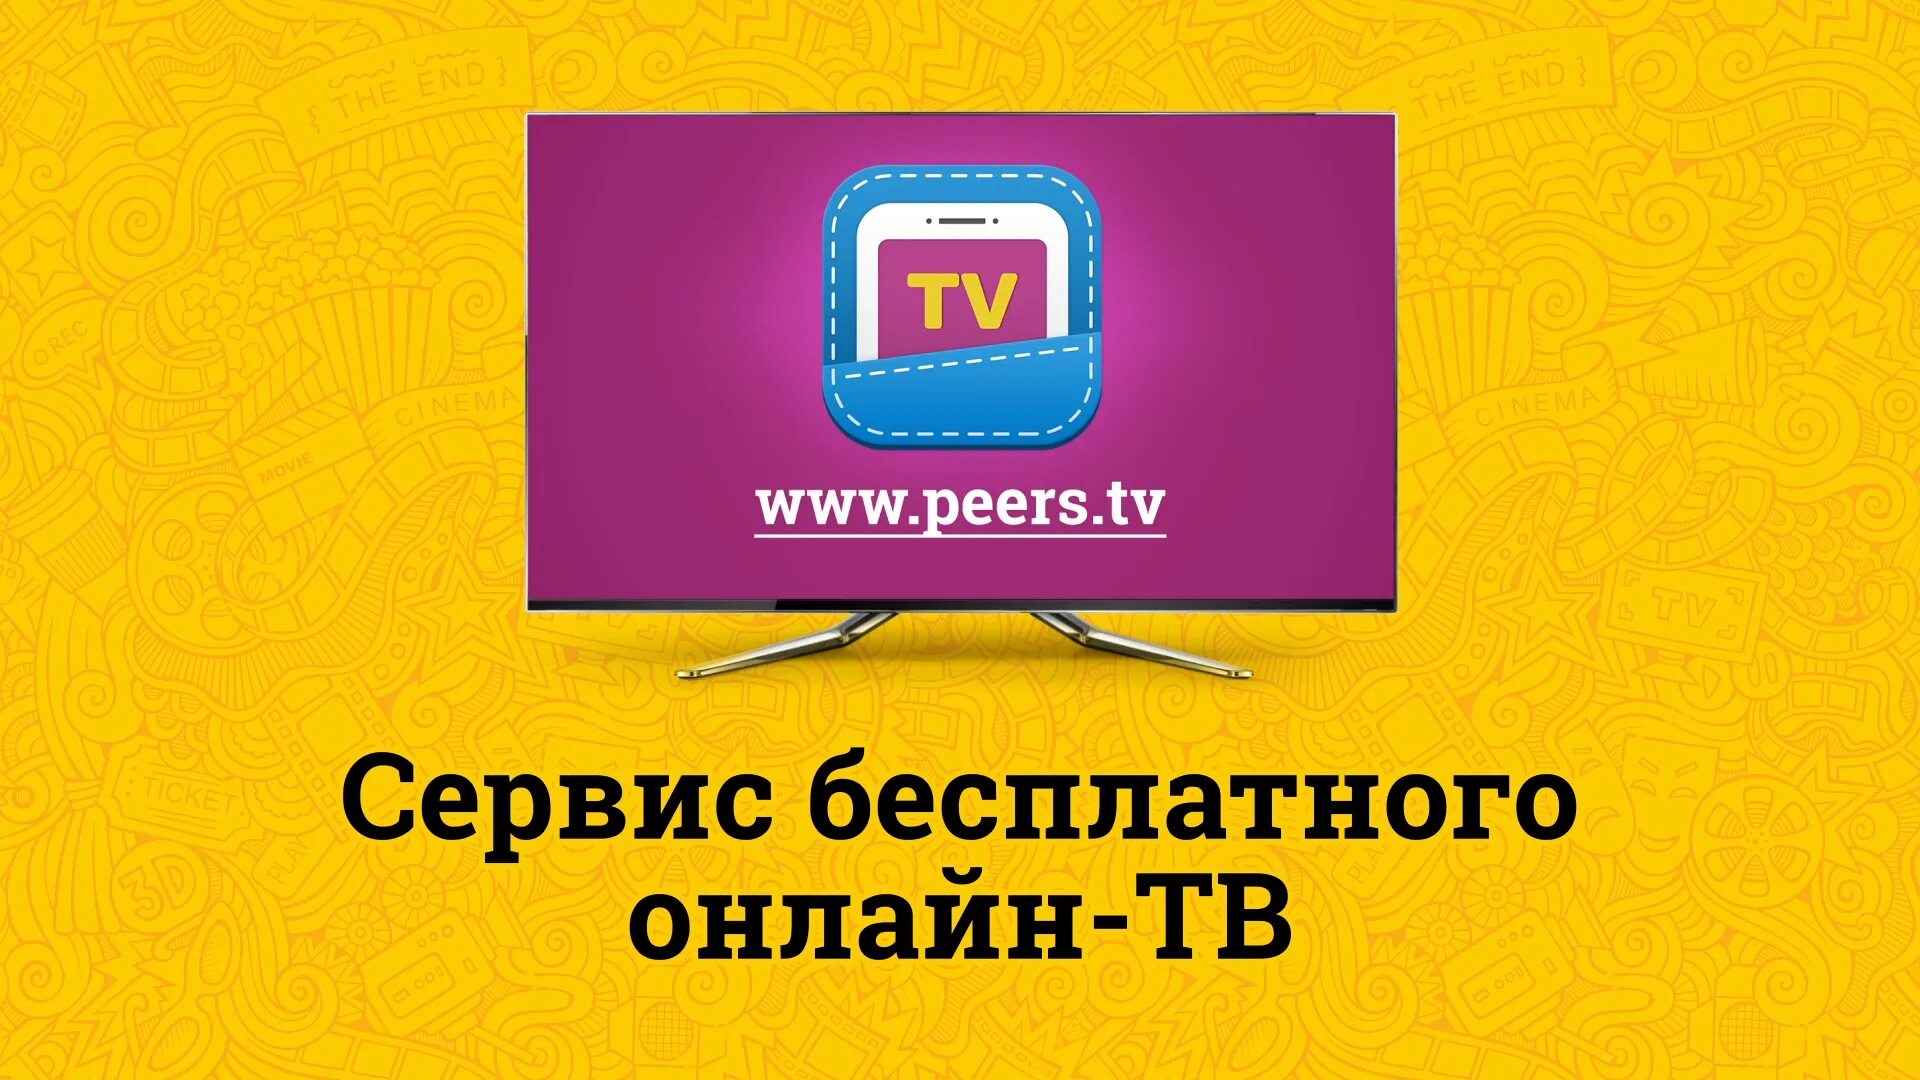 Peers 4pda. Peers TV. Peers TV логотип. Перс ТВ. Пирс ТВ каналы.